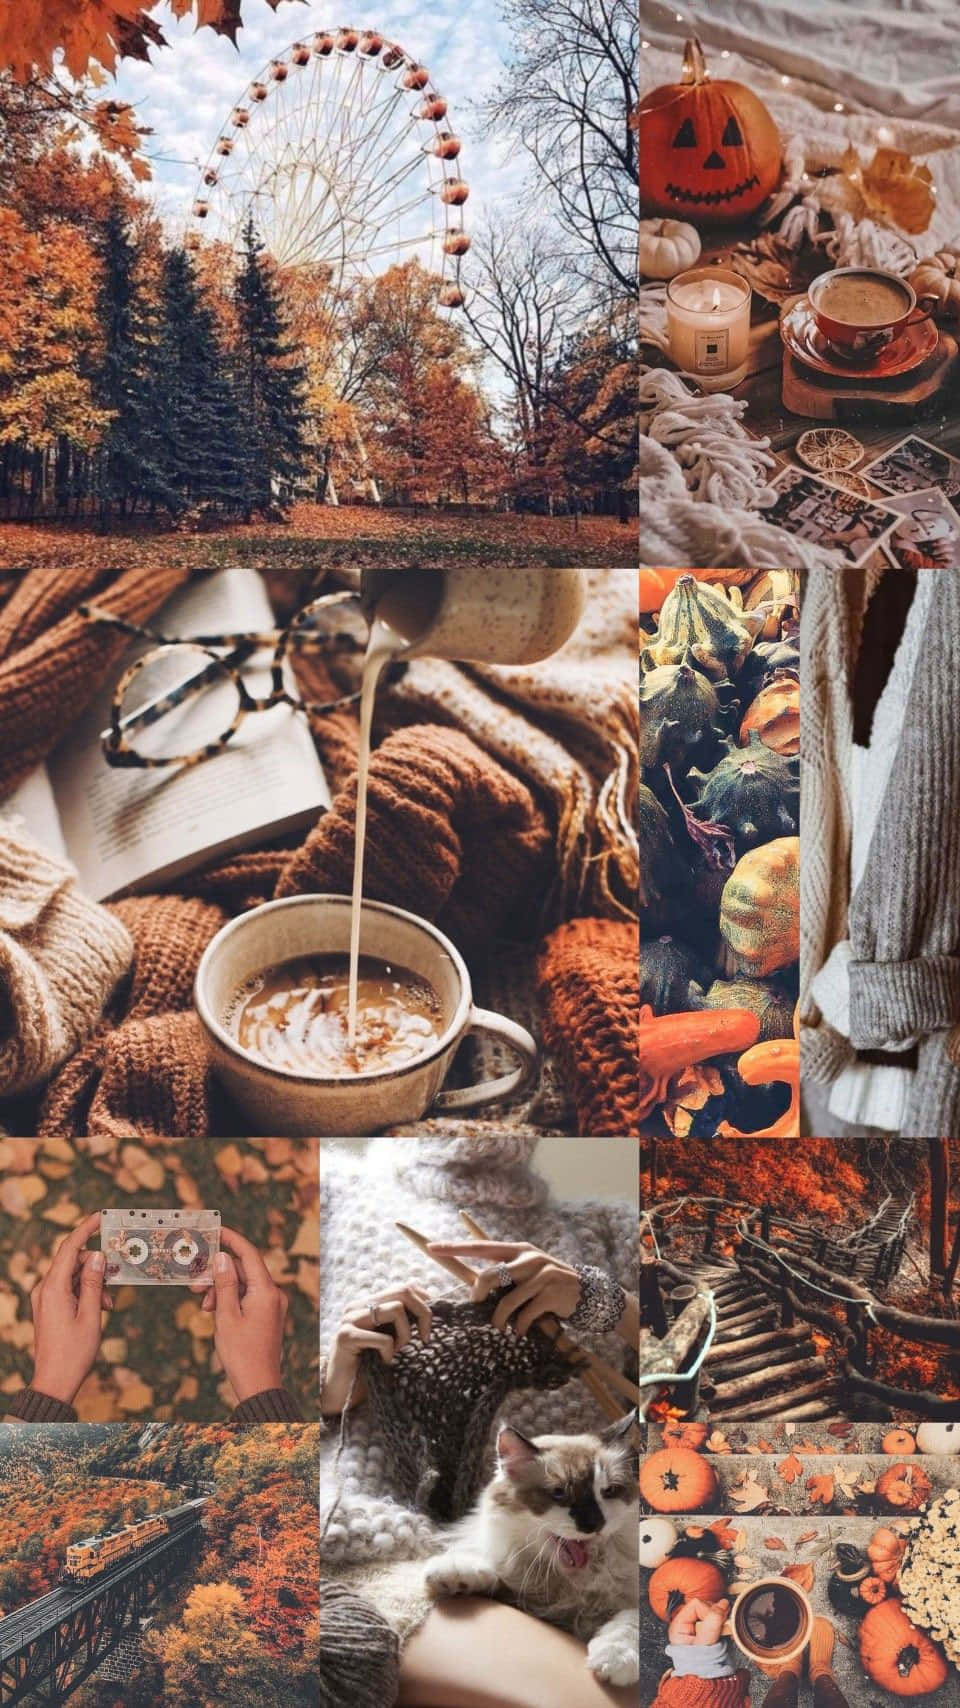 Autumn Collage - Autumn - Autumn - Autumn - Autumn - Autumn - Autumn - Autumn - Autumn - Autumn - Autumn